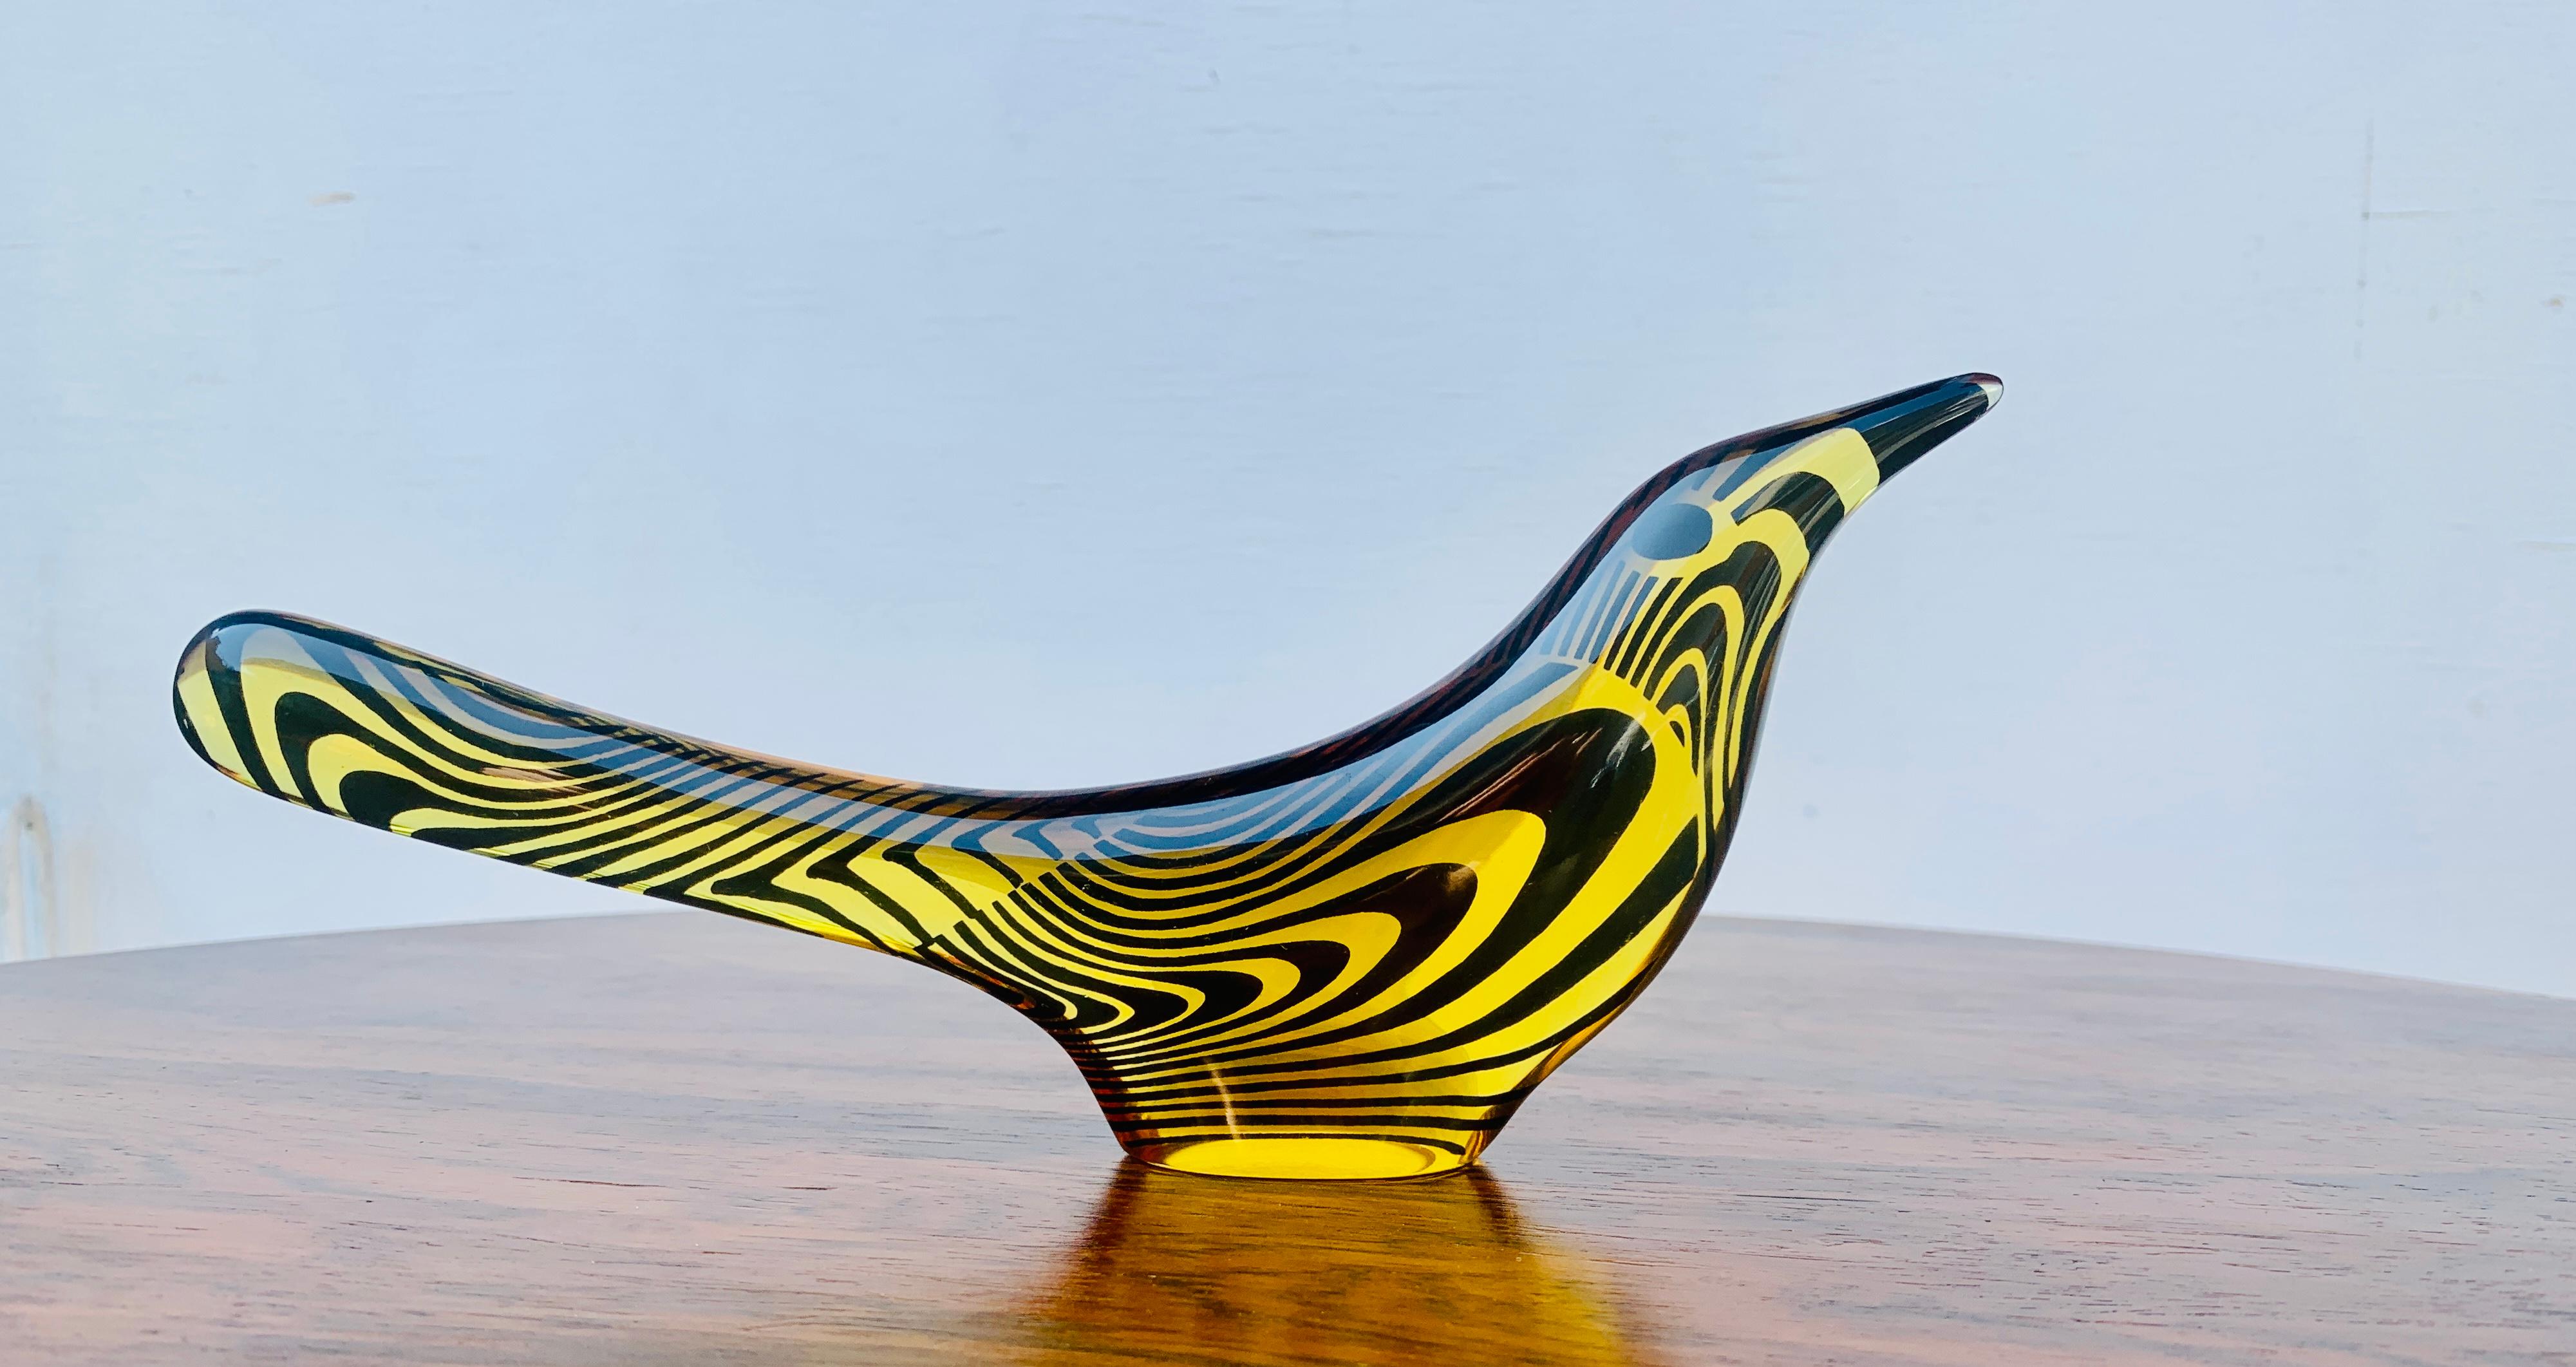 Abraham Palatnik (1928-2020)
Sculpture d'oiseau, c. 1960
Résine de polyester et pigments.
Mesures : (21,5 x 9,5 x 2,5 cm)
Sculpture en résine polyester représentant un oiseau, dans les couleurs jaune et noir 
Elle fait partie de la série de